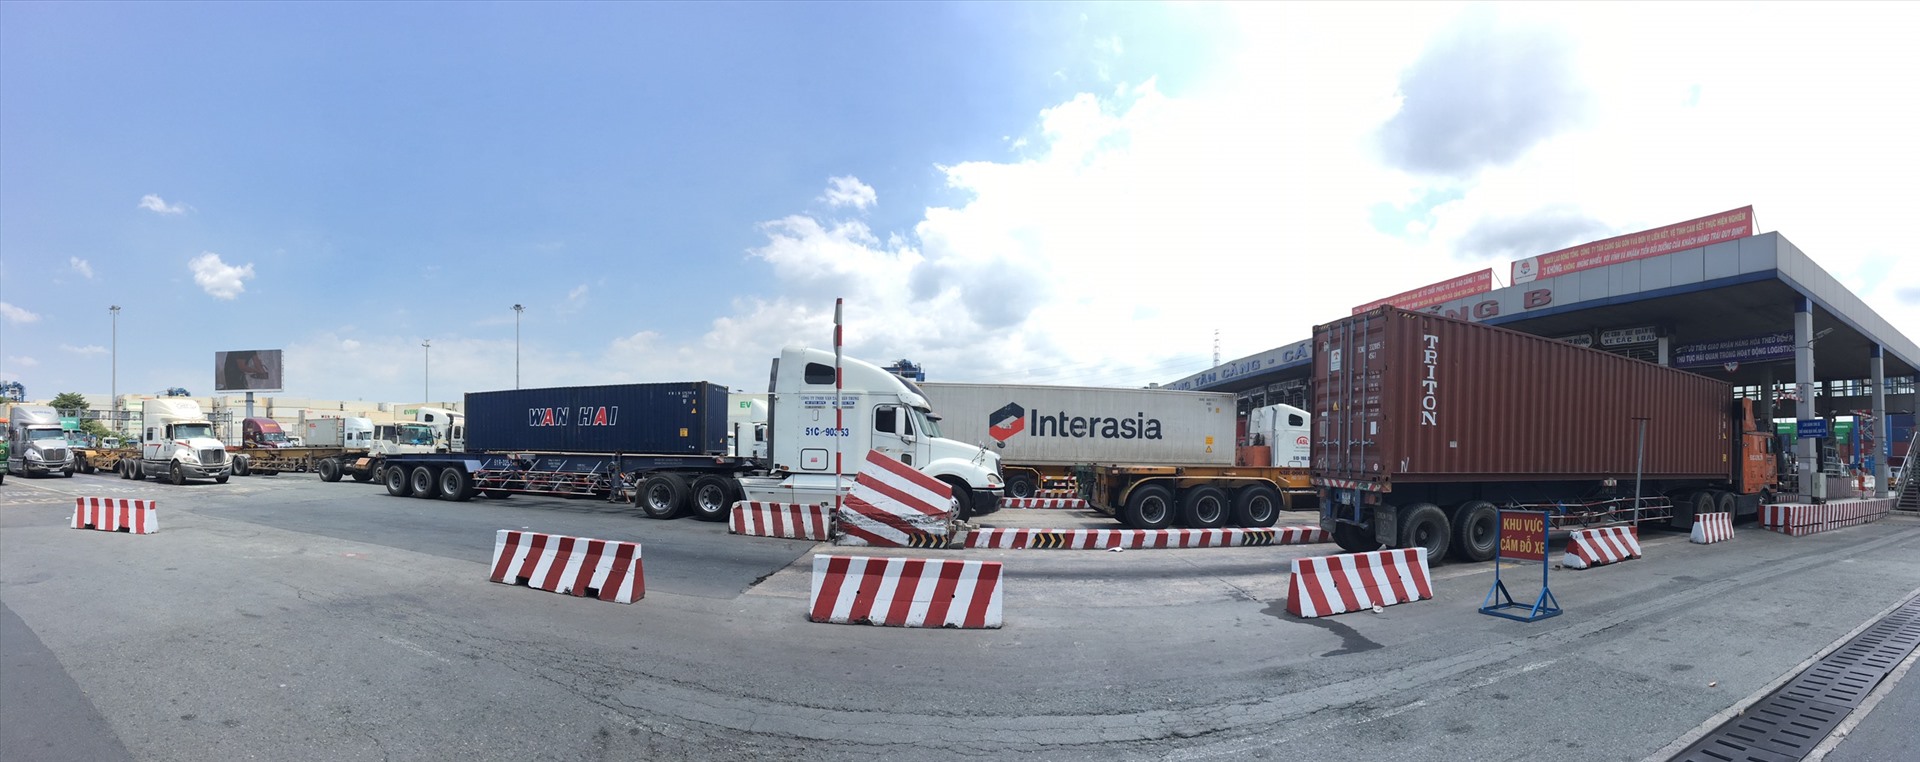 Trước cổng B cảng Tân Cảng - Cát Lái, xe container xếp hàng dài chờ qua cổng cảng lấy, xuất hàng hóa.